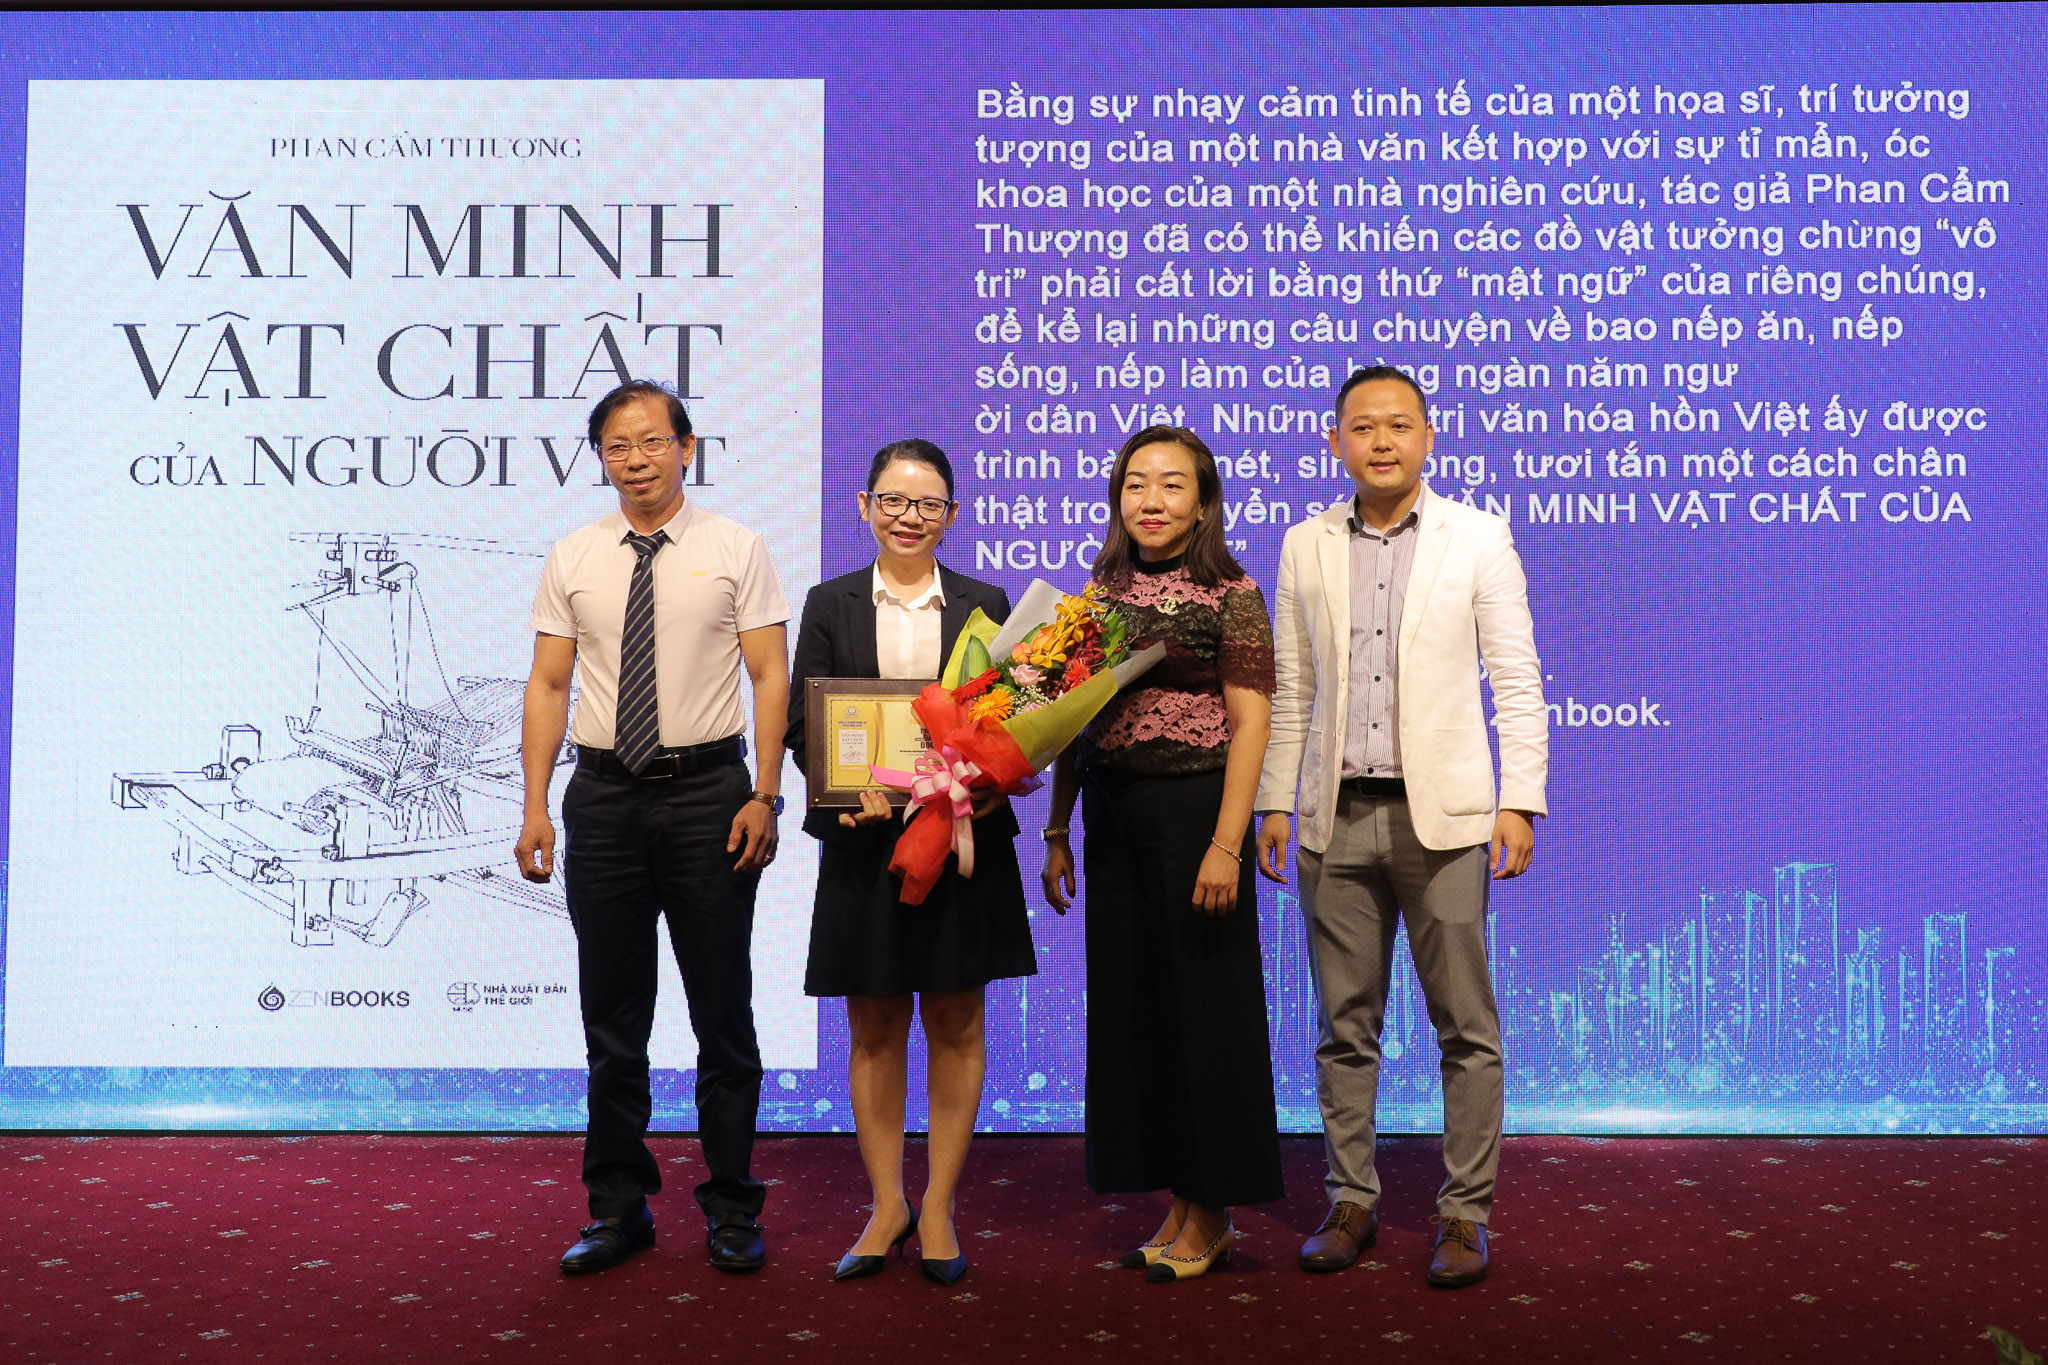 Ông Nguyễn Đức Điền - chủ tịch Hội đồng Trường Đào tạo kỹ năng Quản lý SAM tham dự và trao giải cho top 10 tựa/ Bộ sách đáng đọc nhất